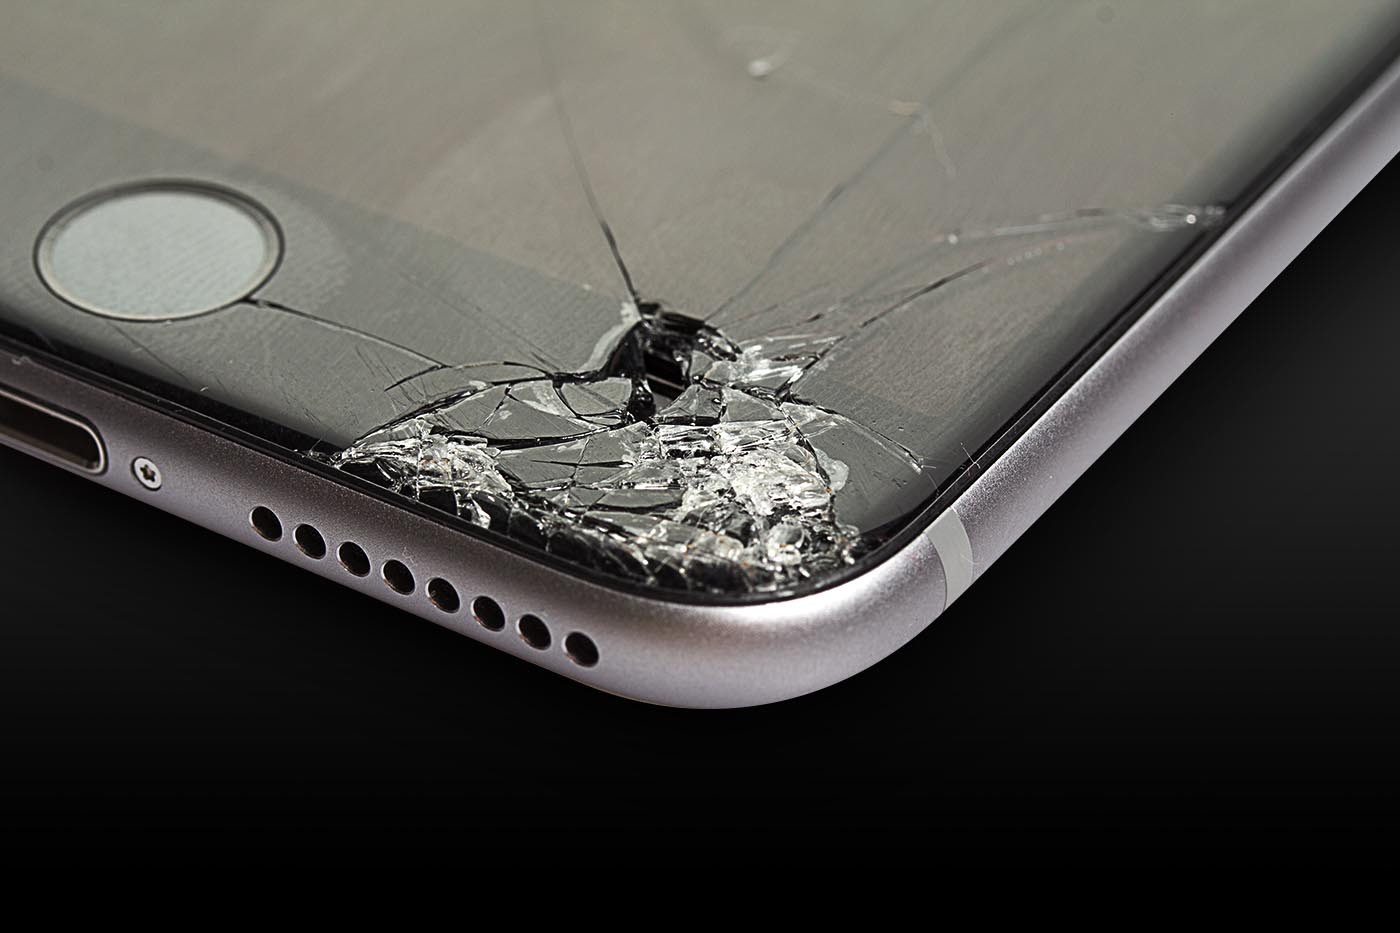 Apple aceptará iPhones rotos en sus programas de intercambio